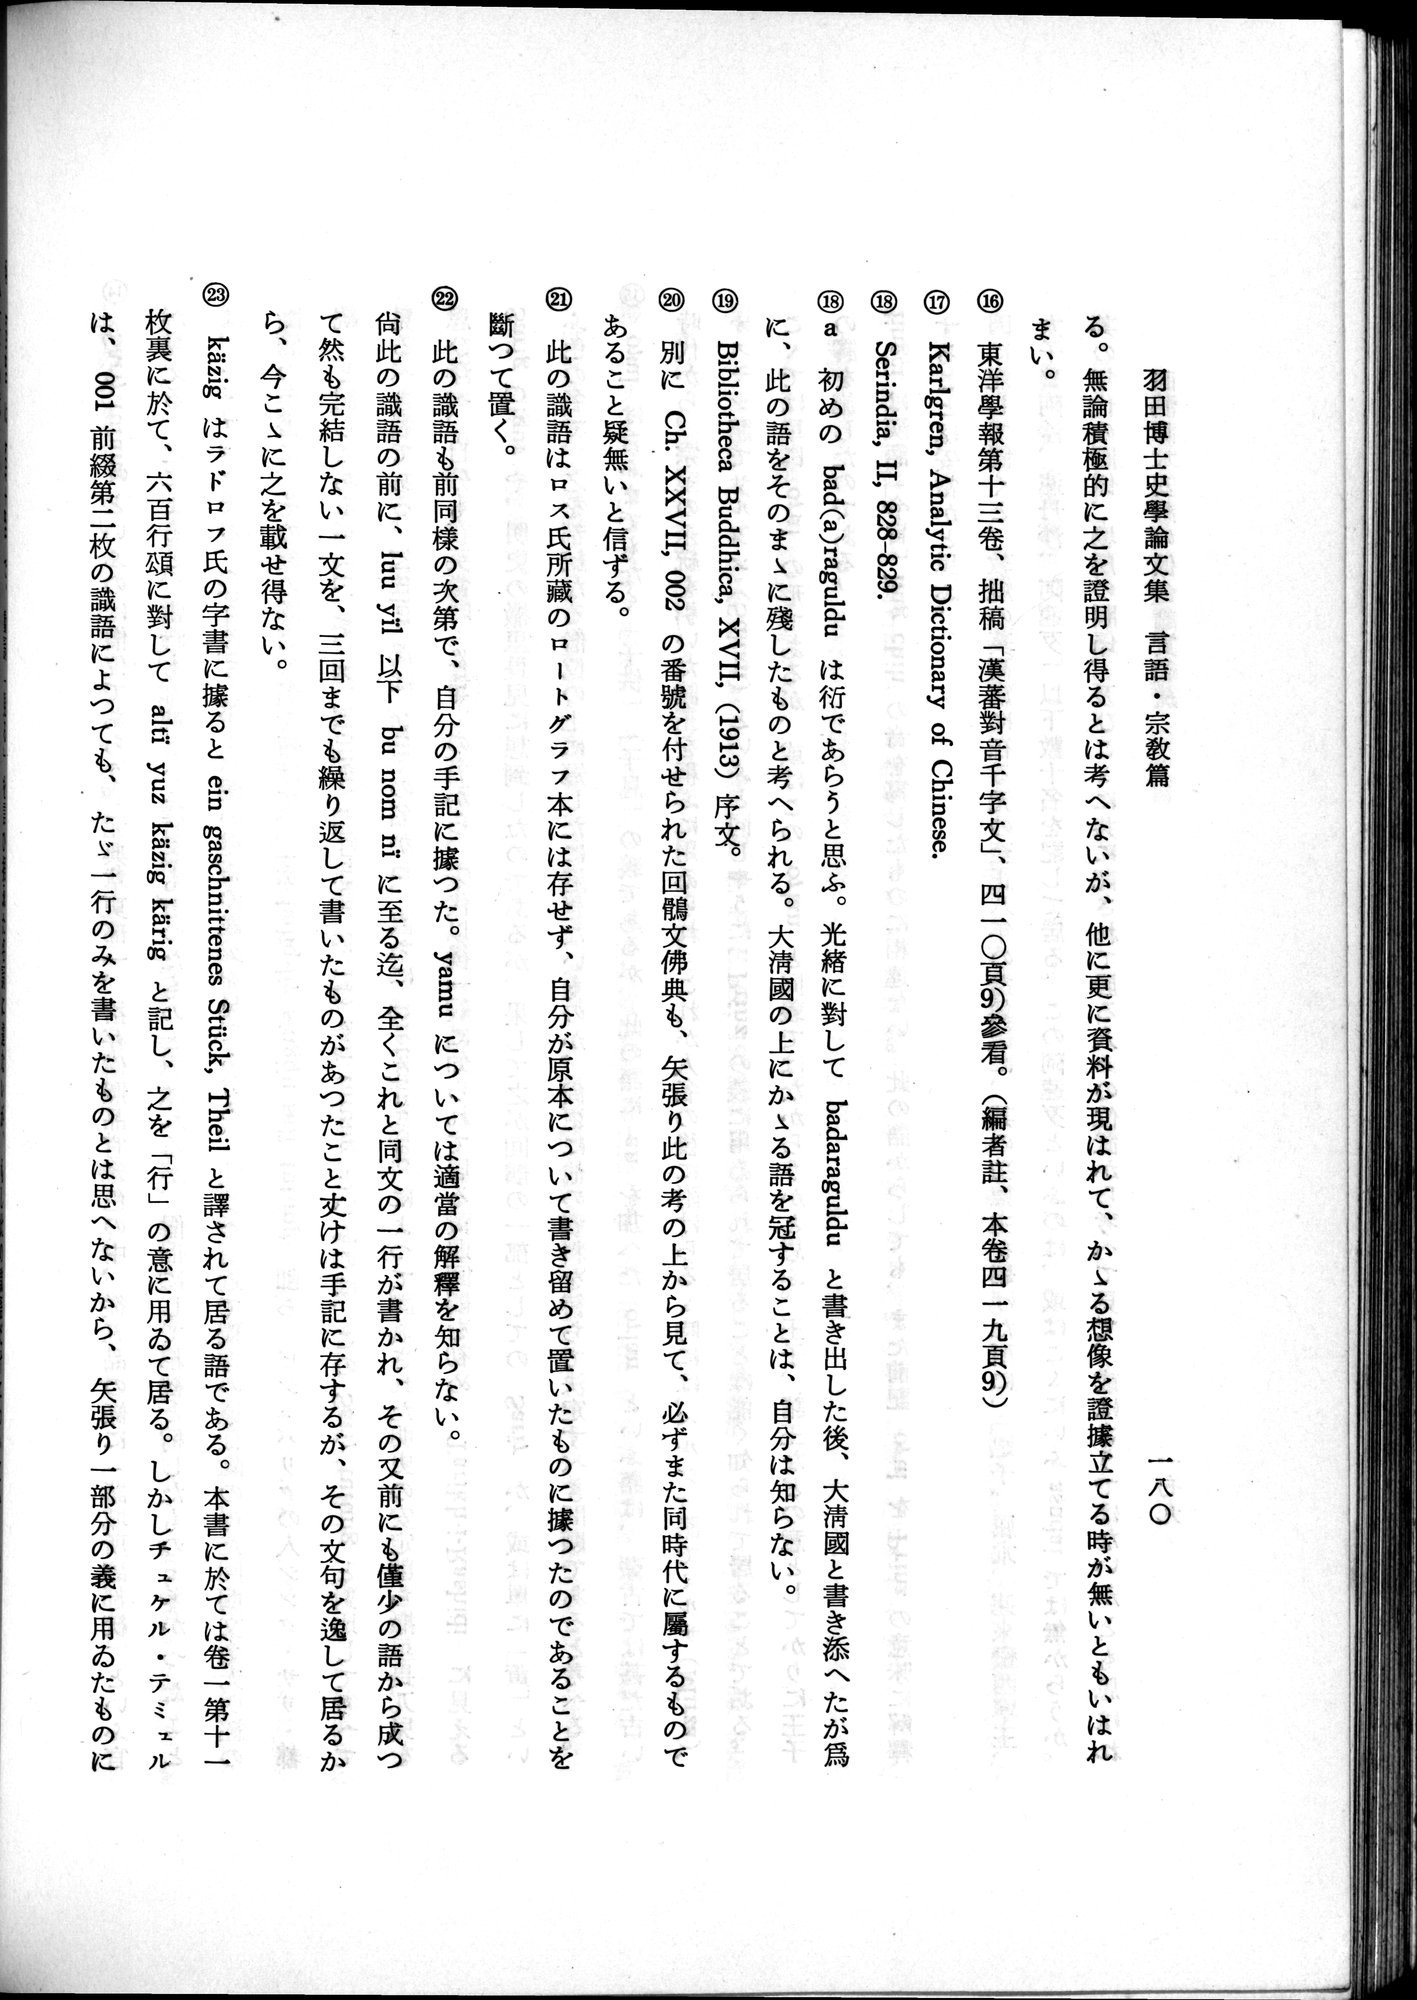 羽田博士史学論文集 : vol.2 / 242 ページ（白黒高解像度画像）